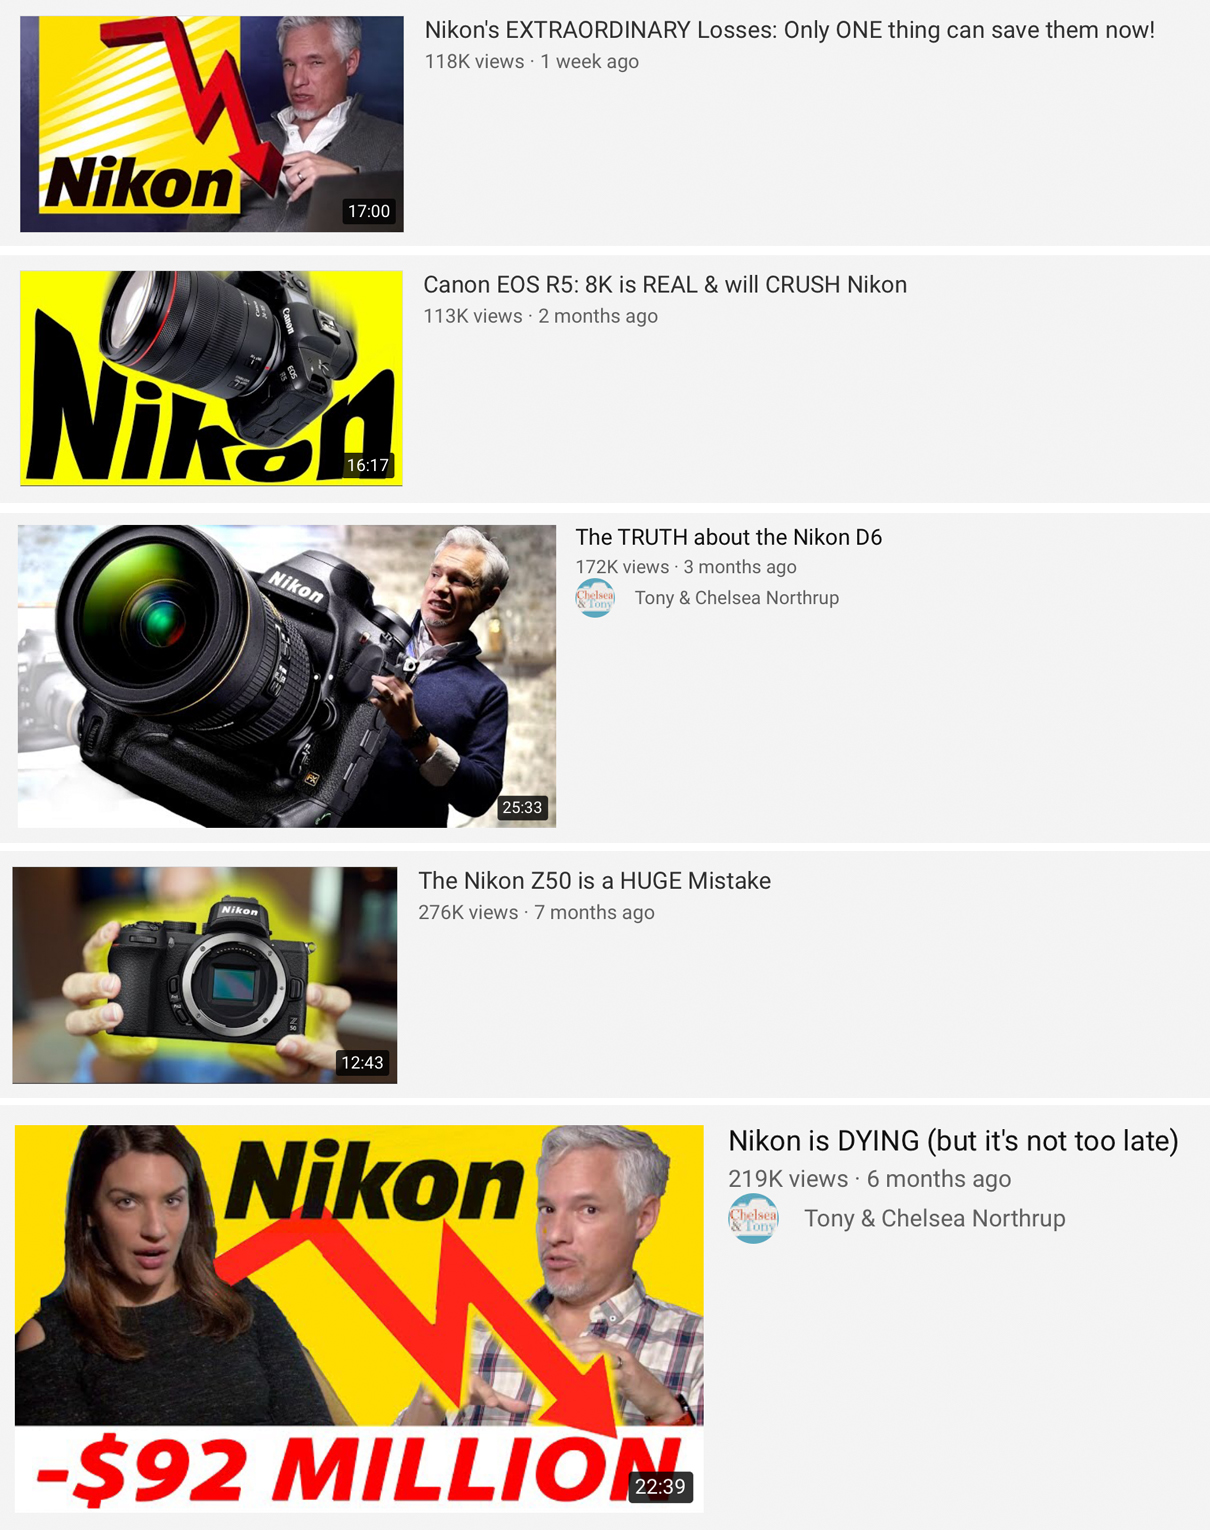 Tony Northrup Hates Nikon 2